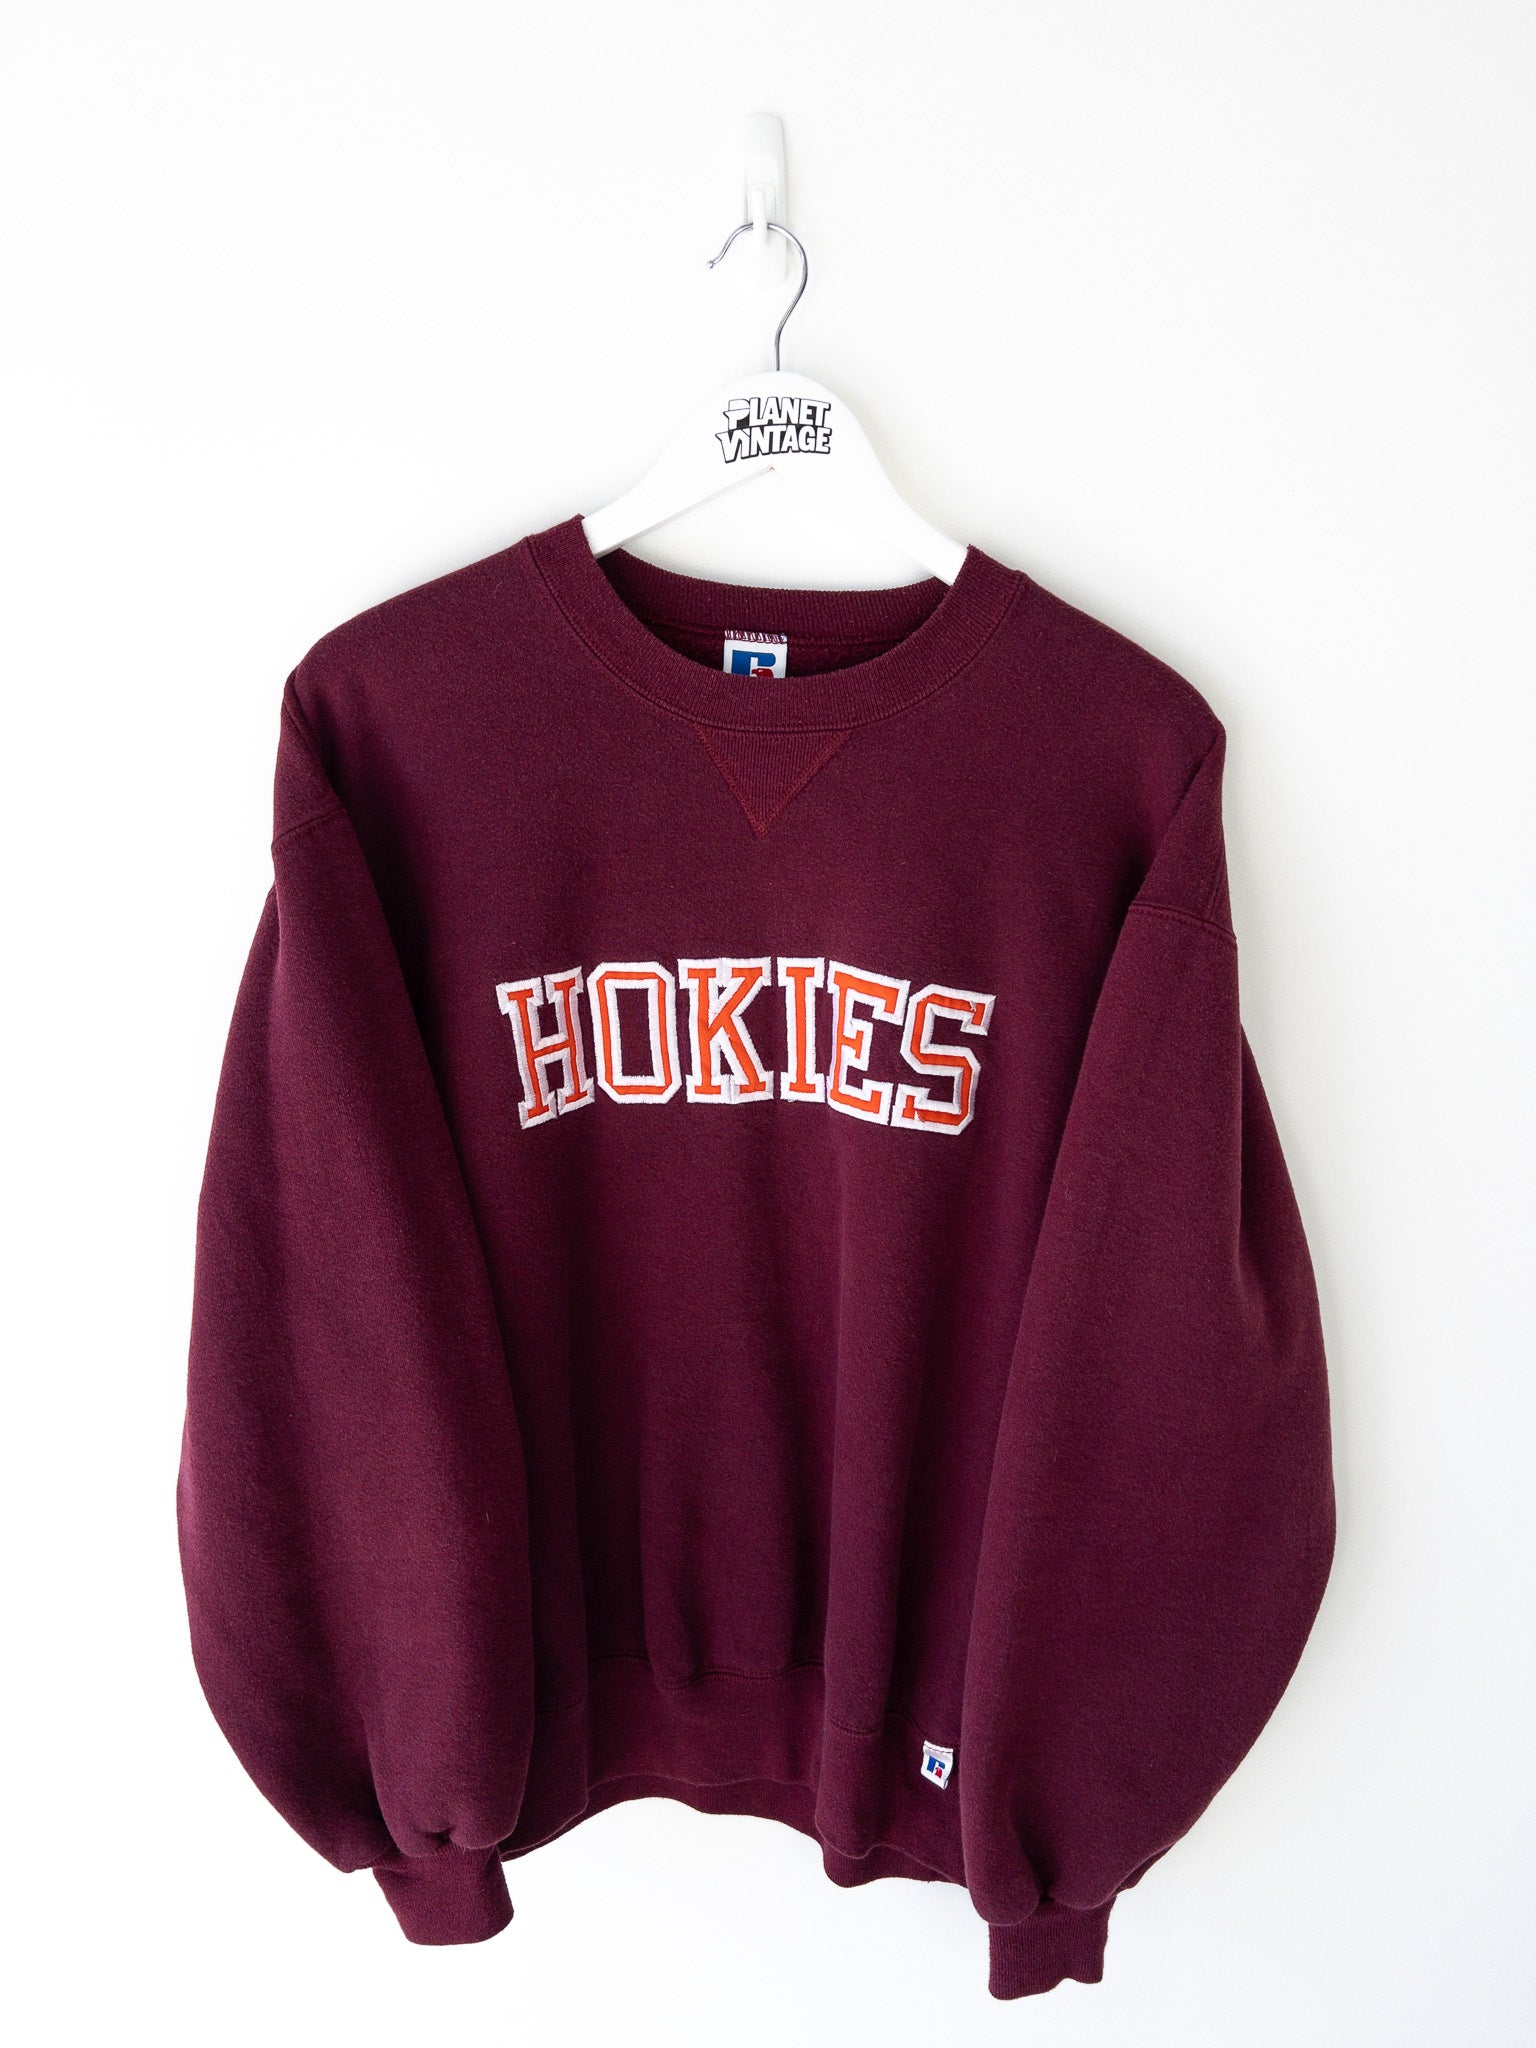 Vintage Virginia Tech Hokies Sweatshirt (L)